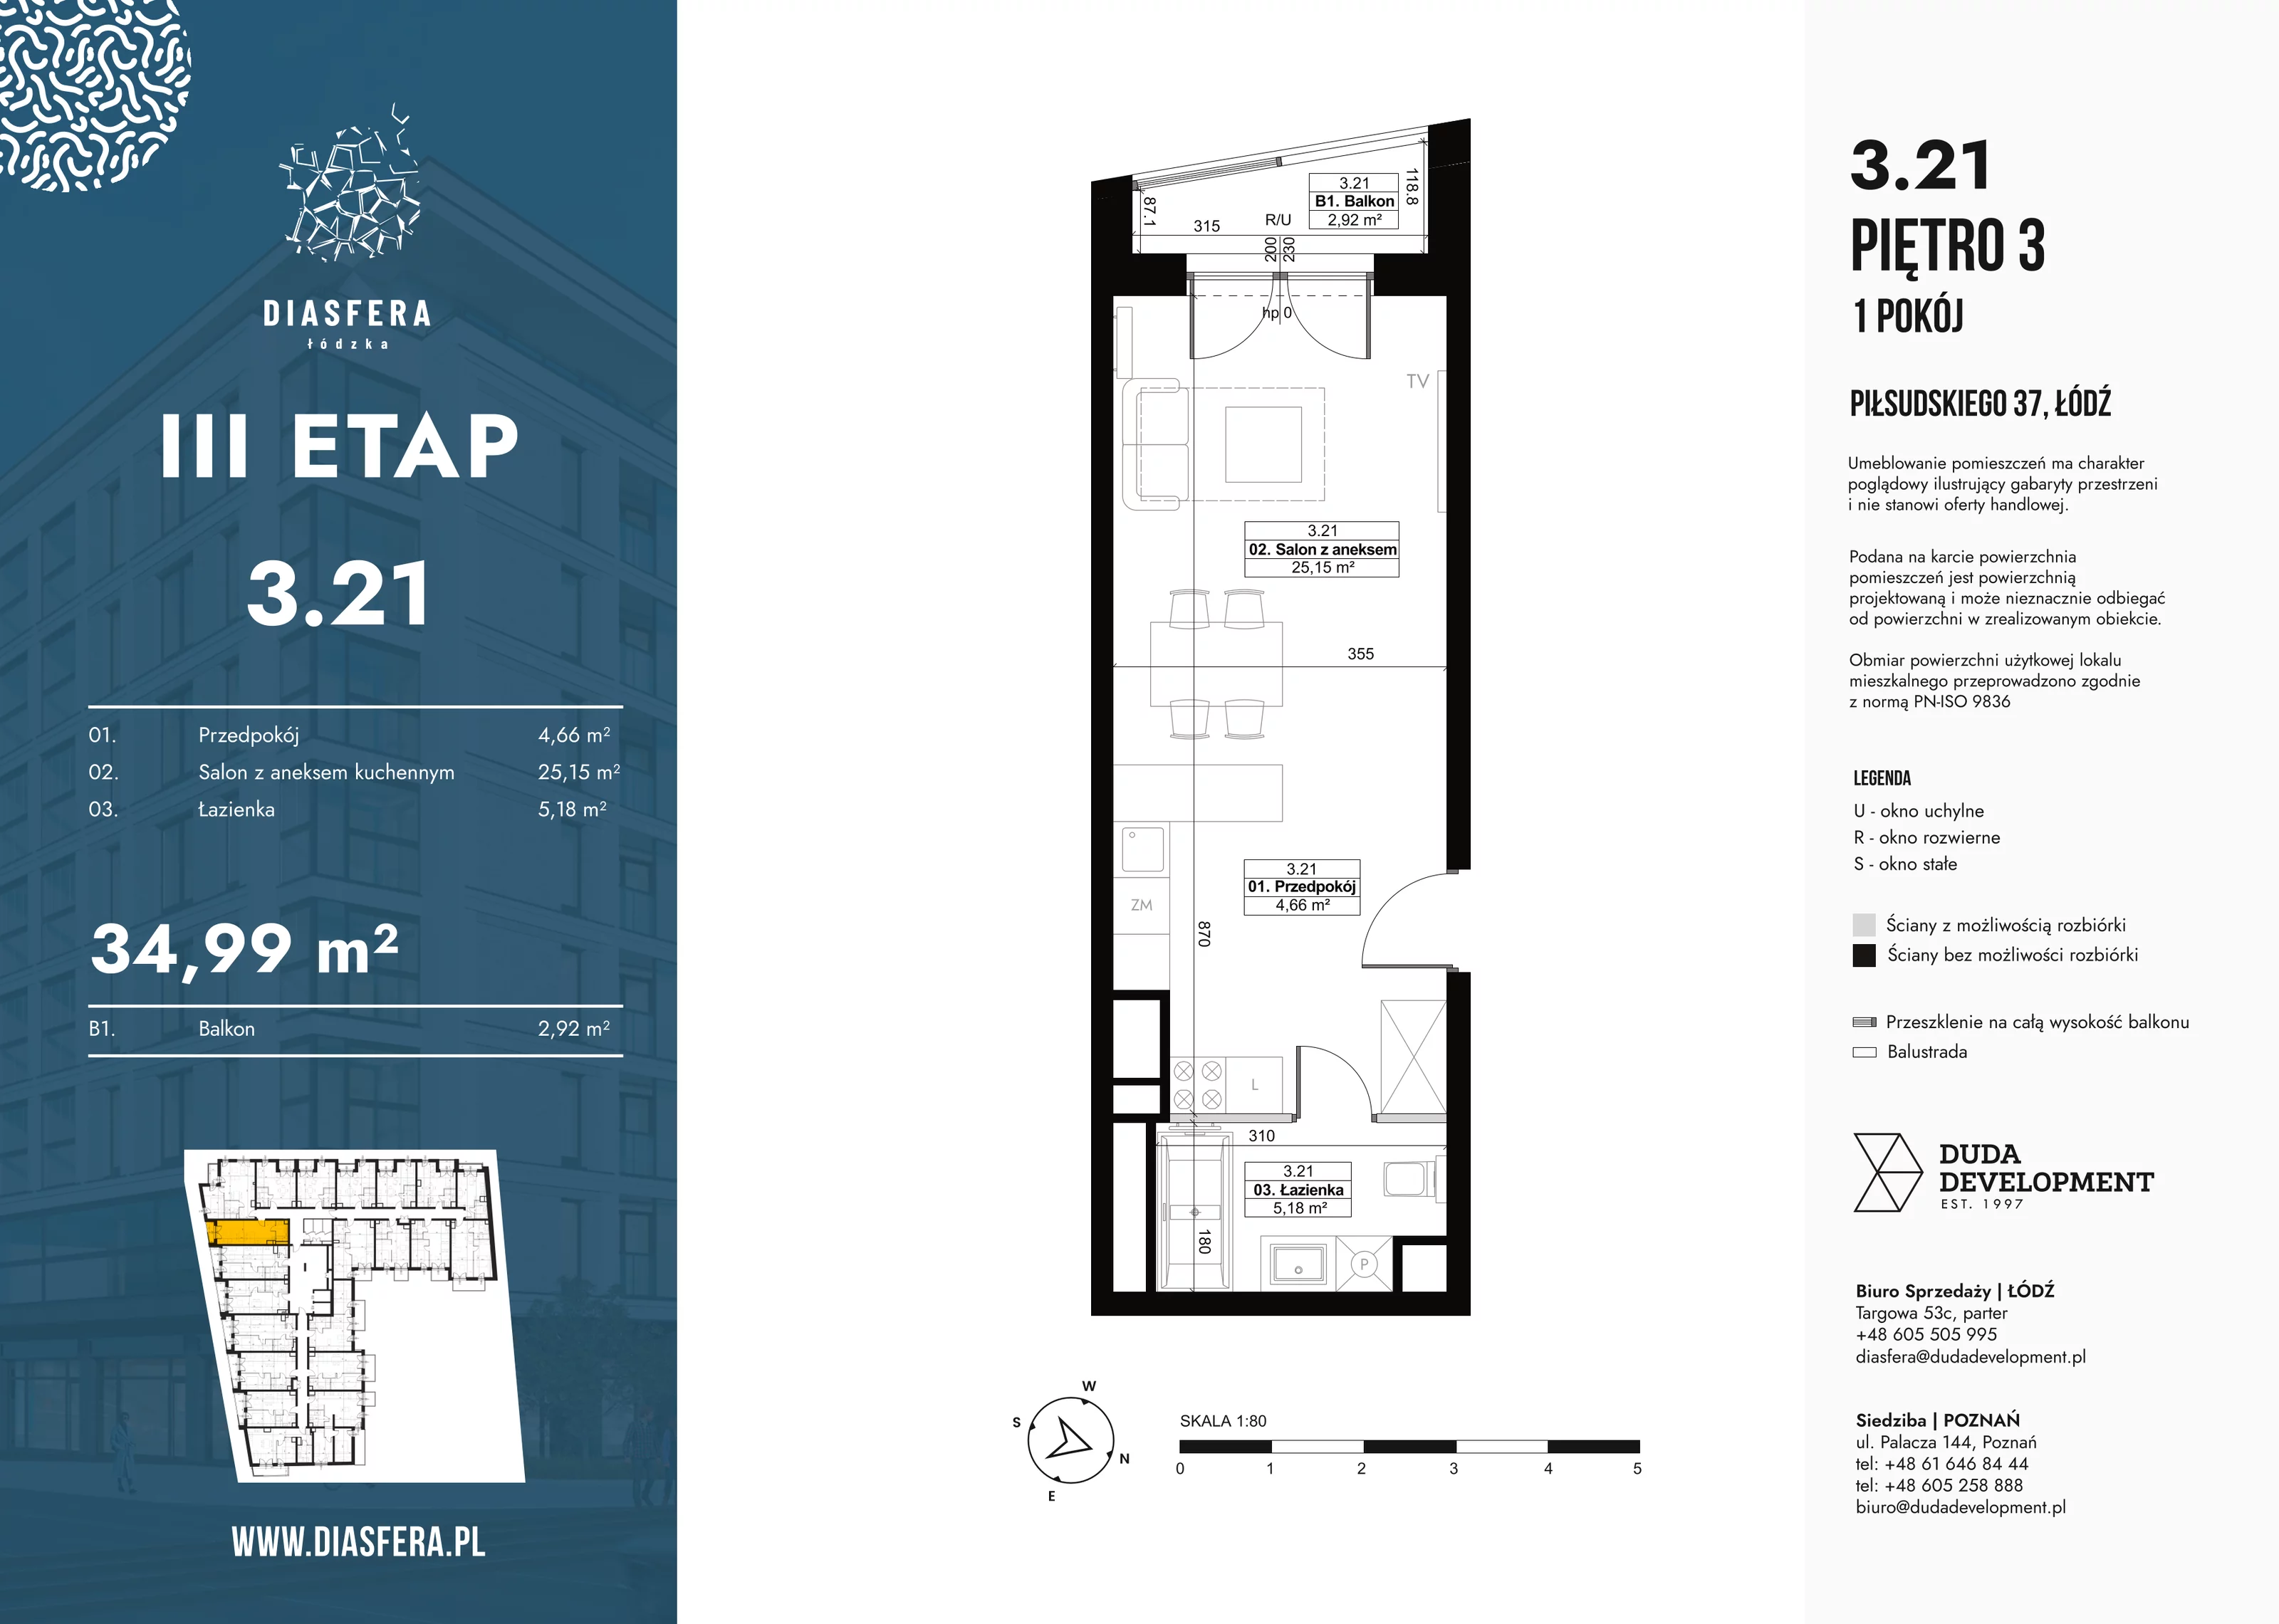 Mieszkanie 34,99 m², piętro 3, oferta nr 3_21, Diasfera III, Łódź, Śródmieście, al. Piłsudskiego 37